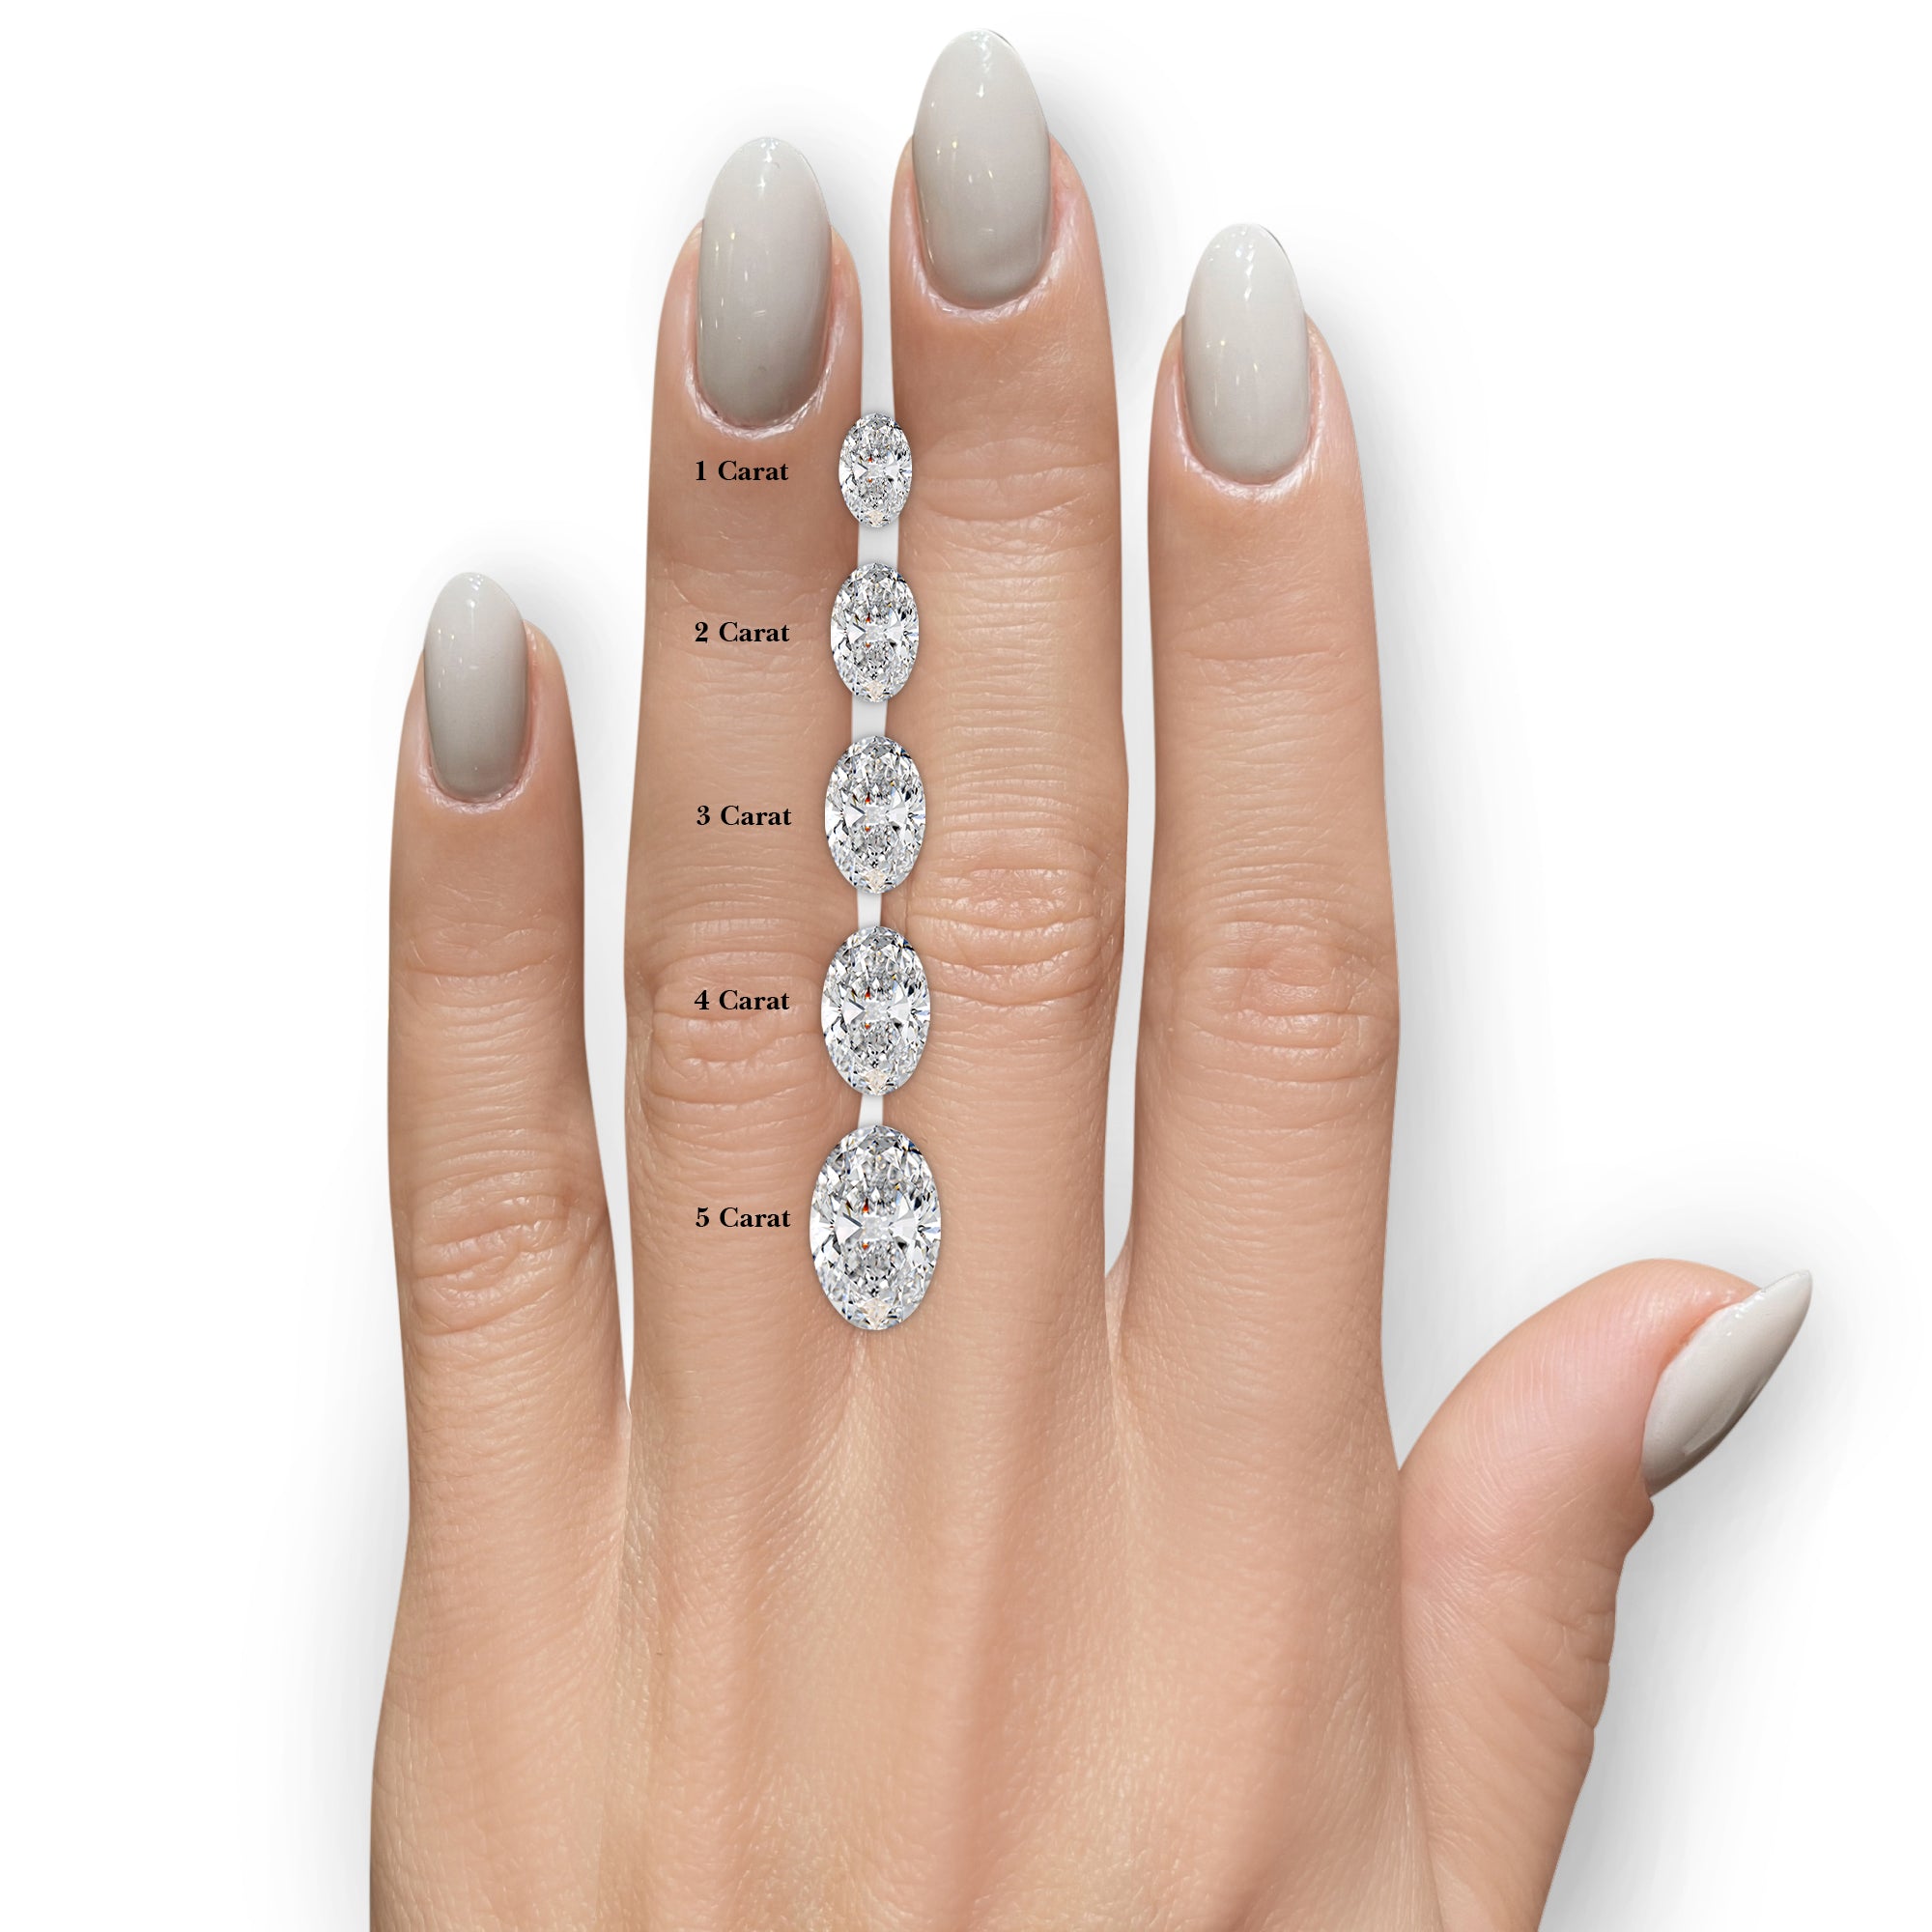 Rebecca Moissanite & Diamonds Ring -14K White Gold